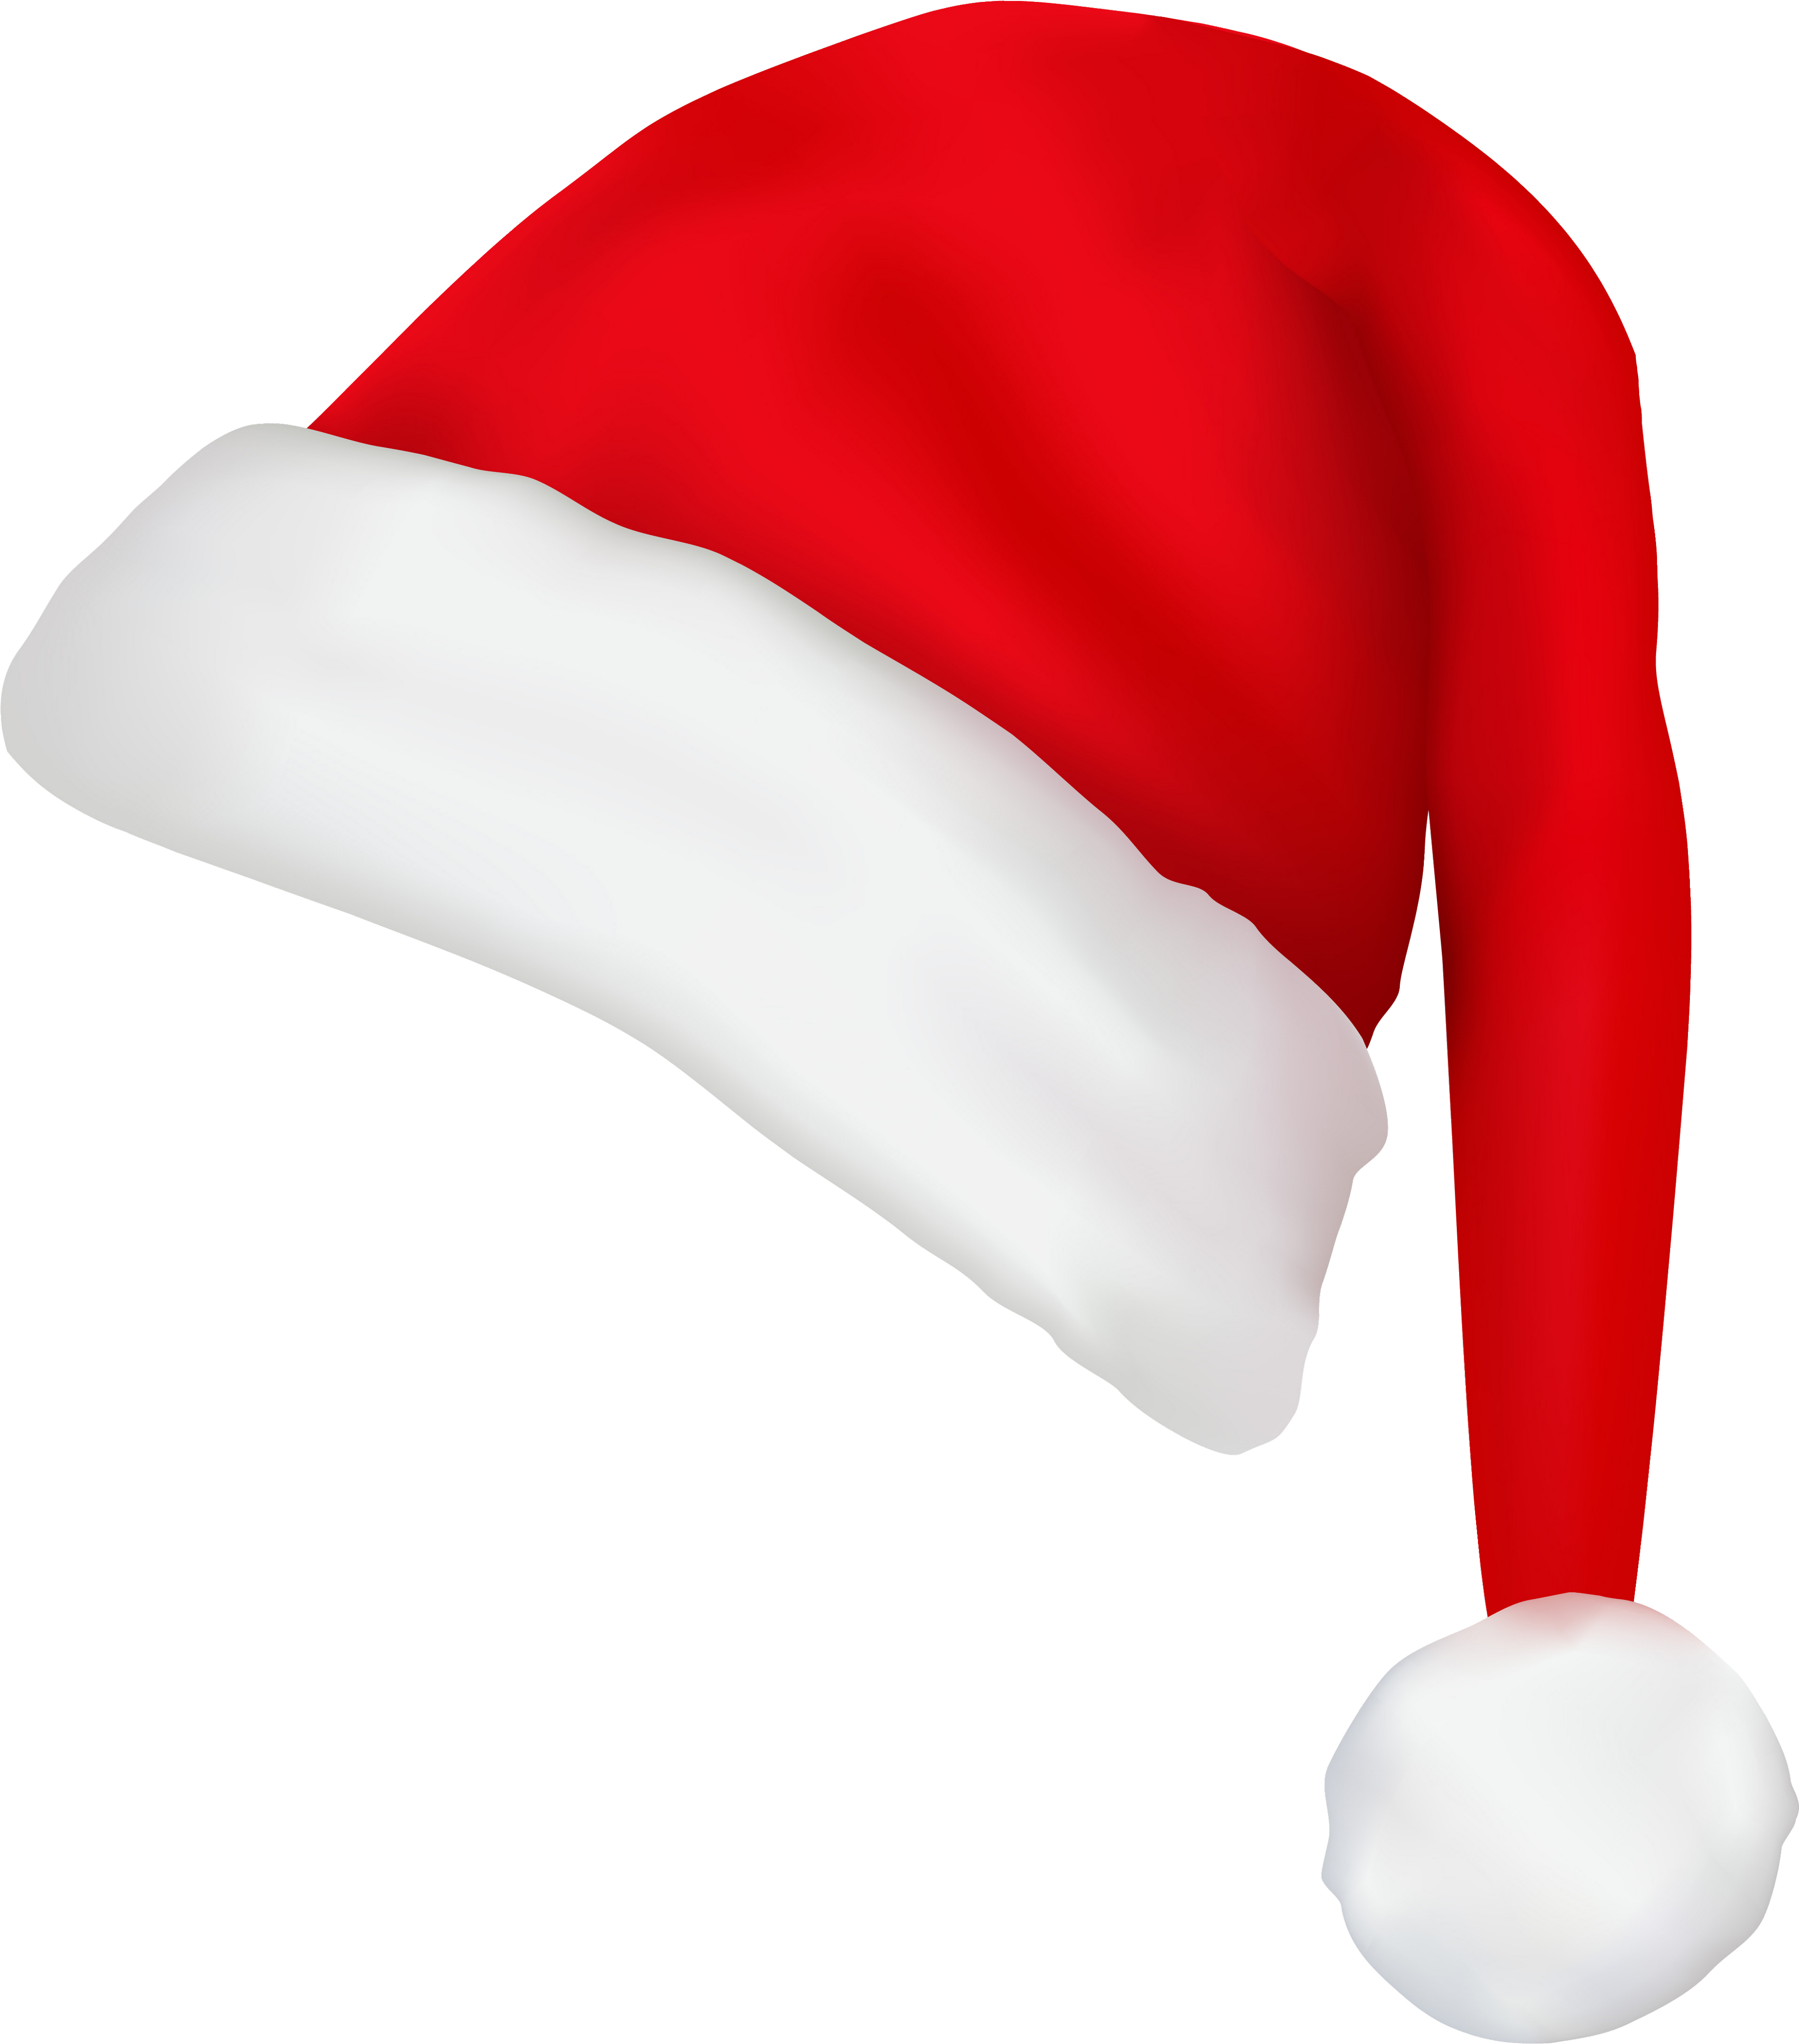 Chapéus de Papai Noel, chapéus de Natal